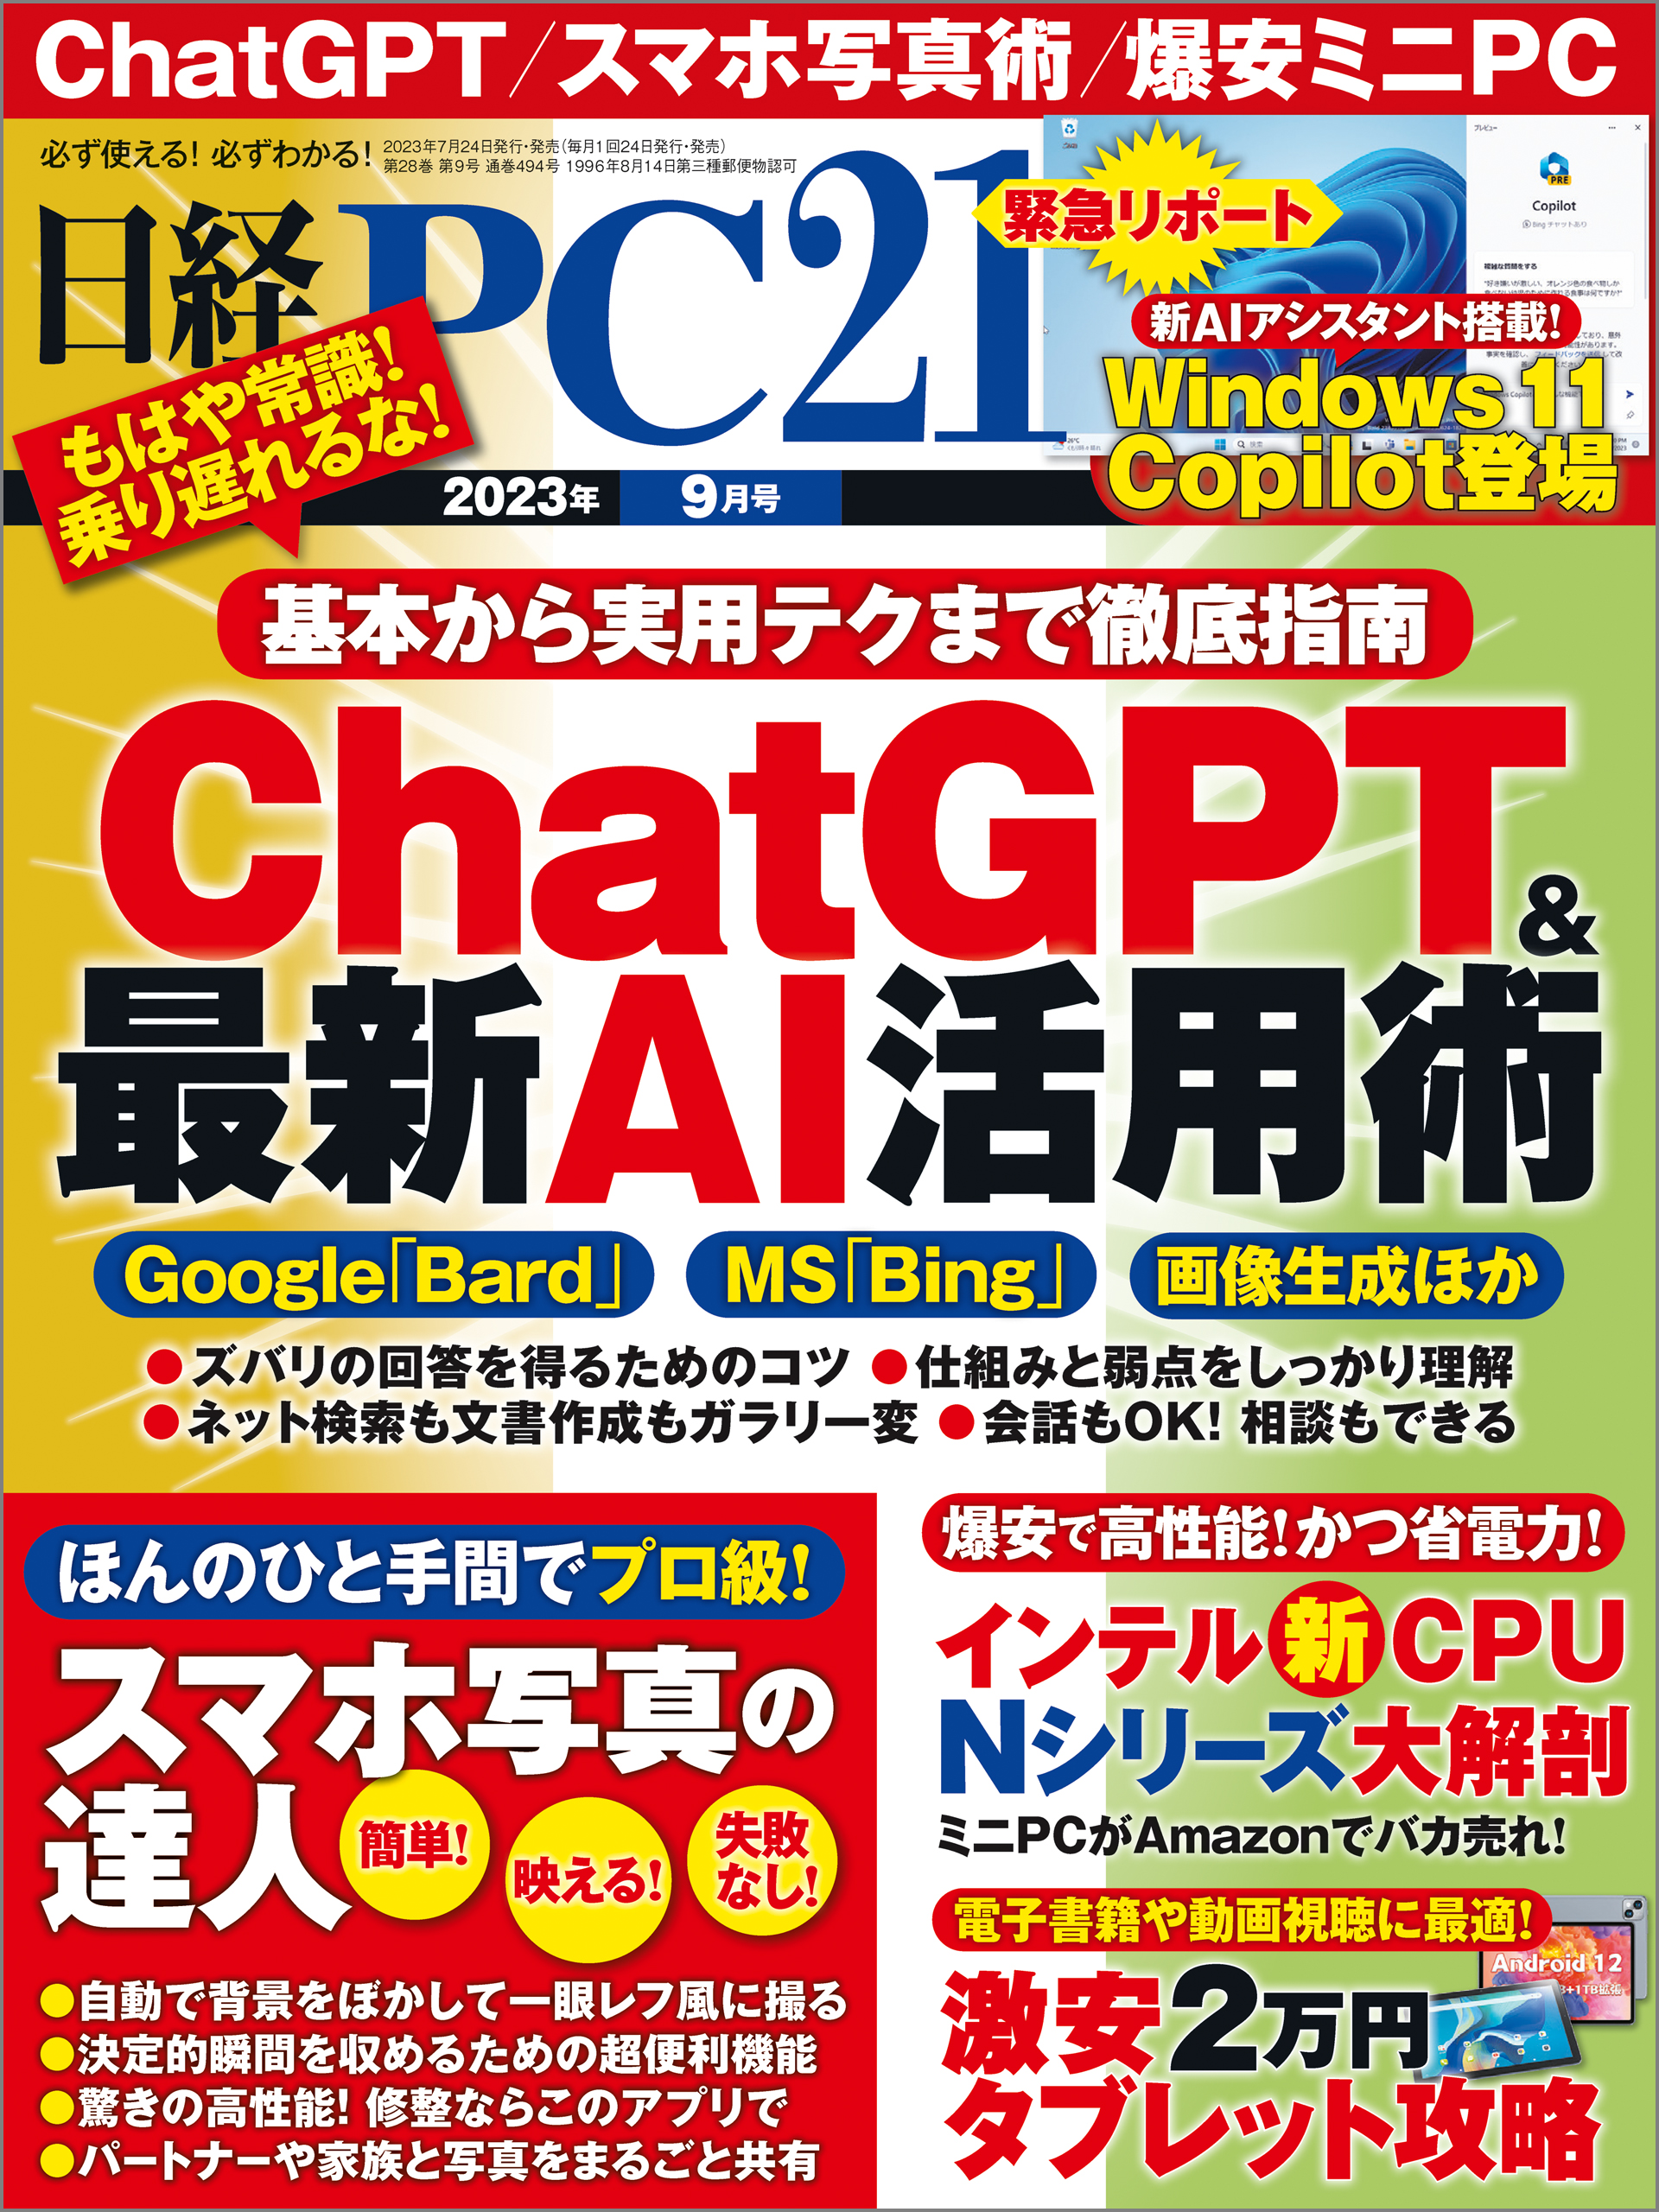 日経 PC 21 (ピーシーニジュウイチ) 2023年 03月号